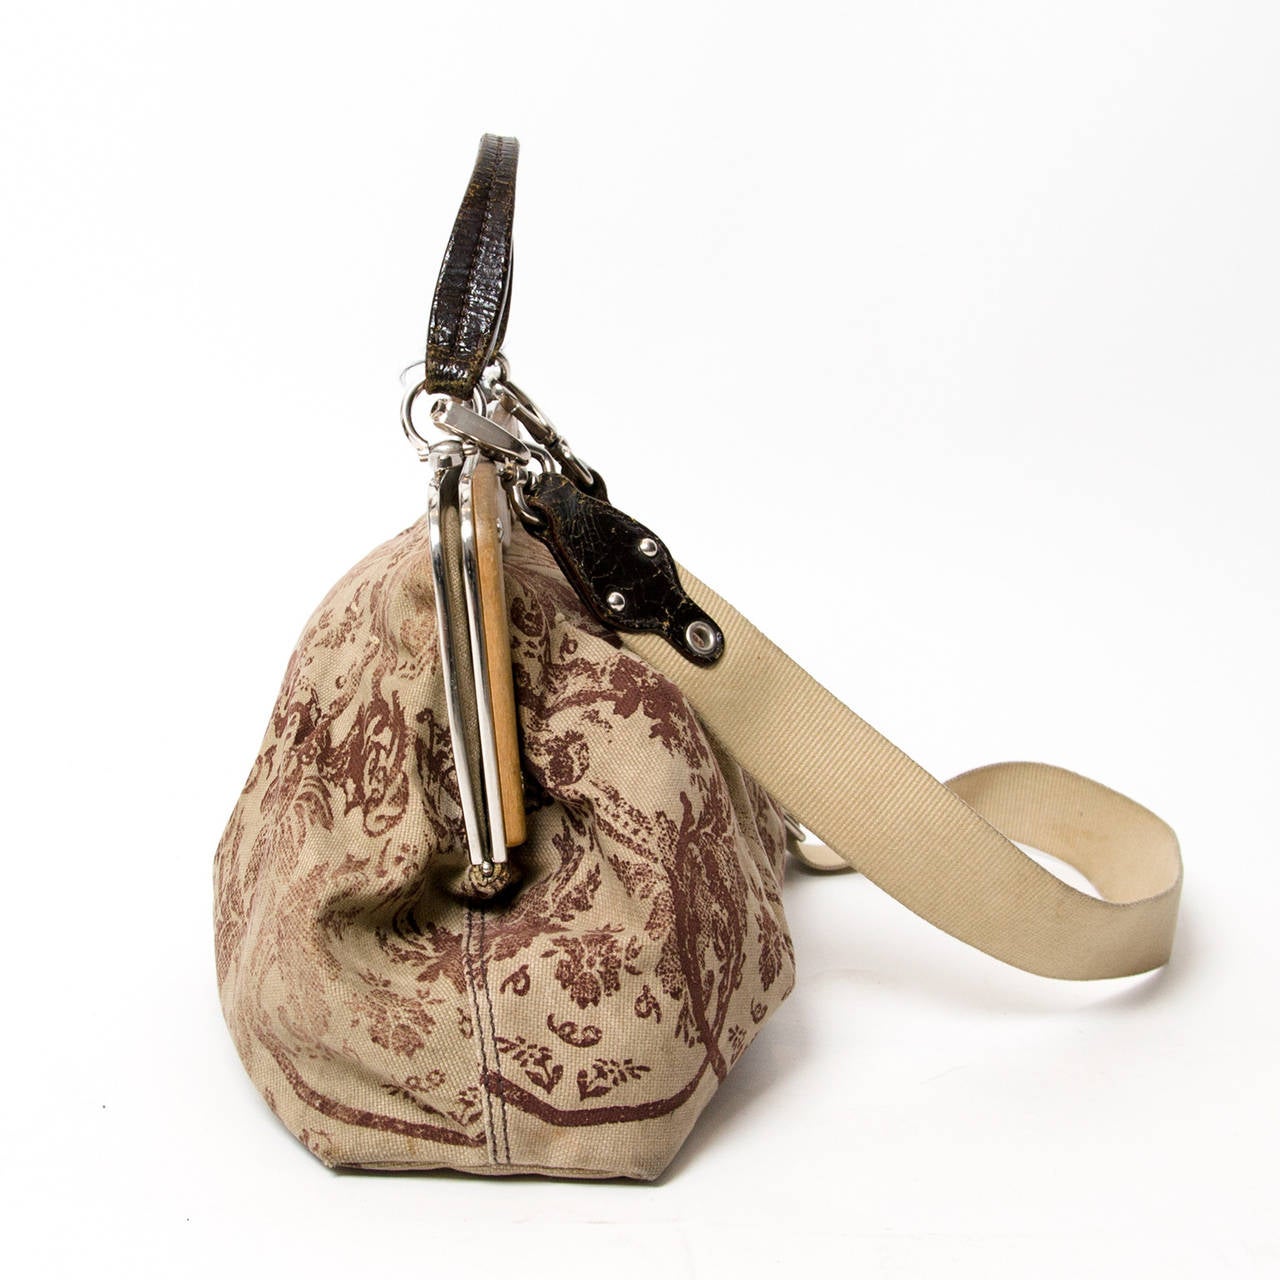 Miu Miu canvas floral top handle bag with wood details.